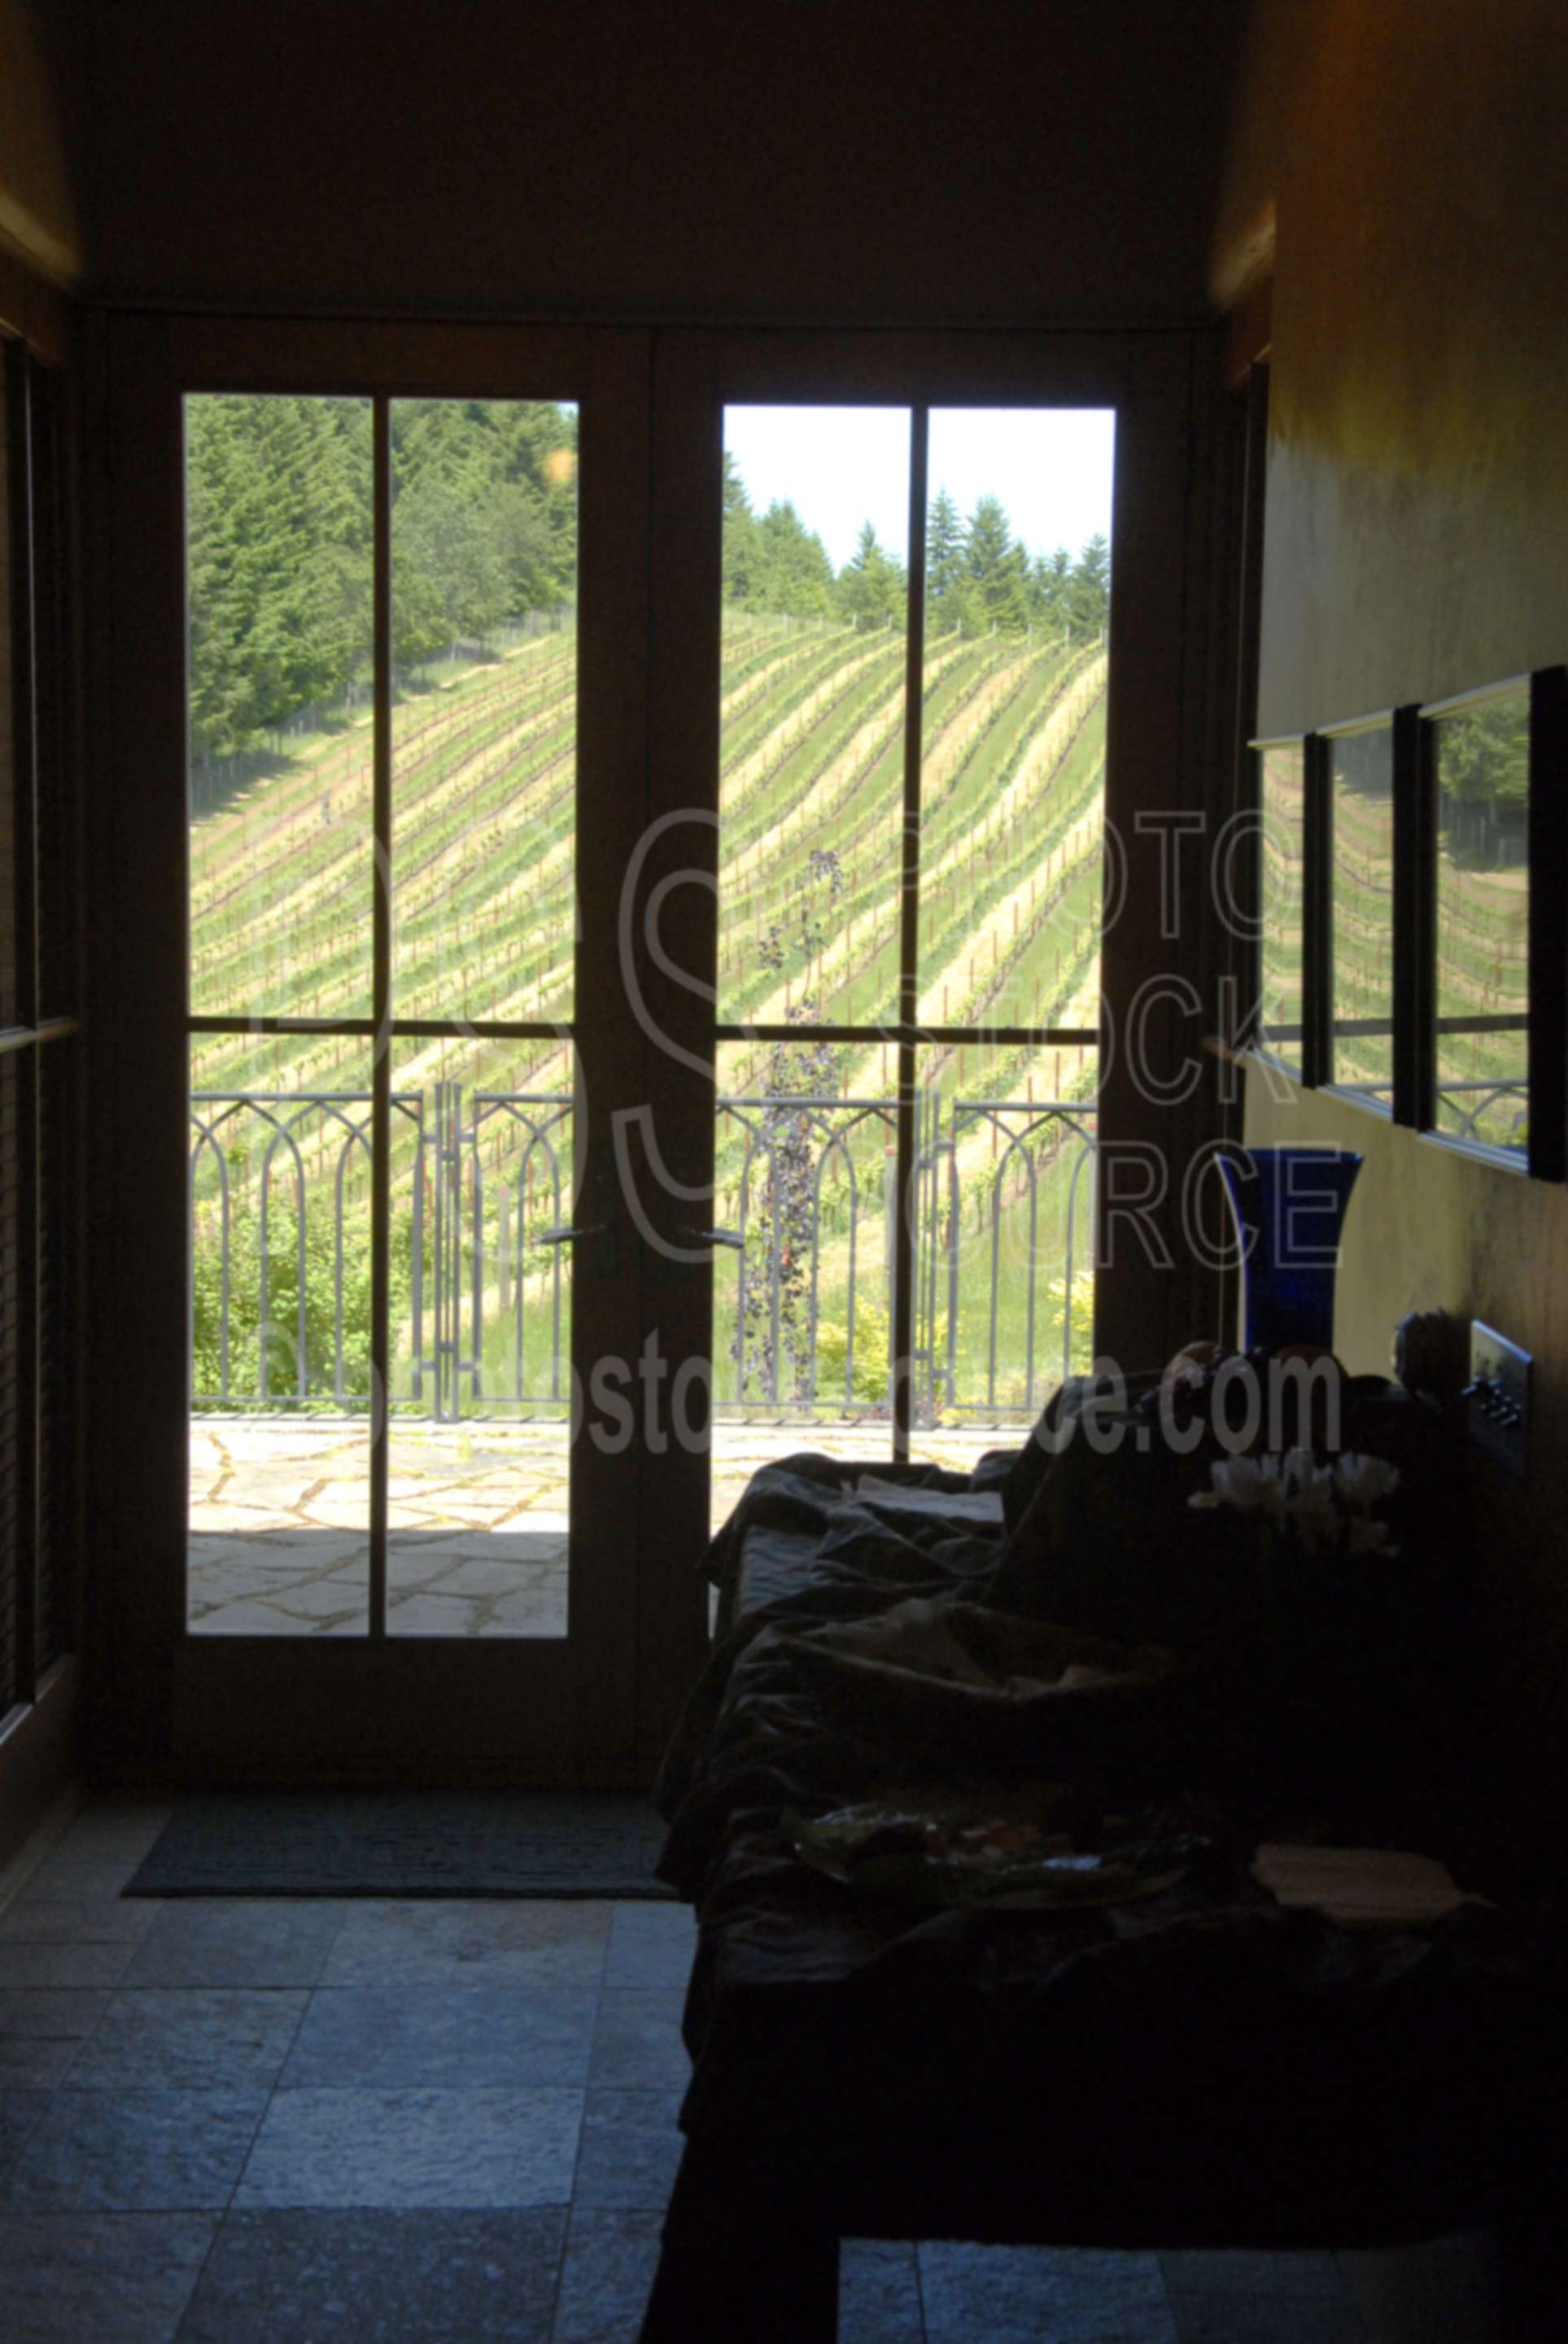 Iris Hill Winery,vines,vineyard,door